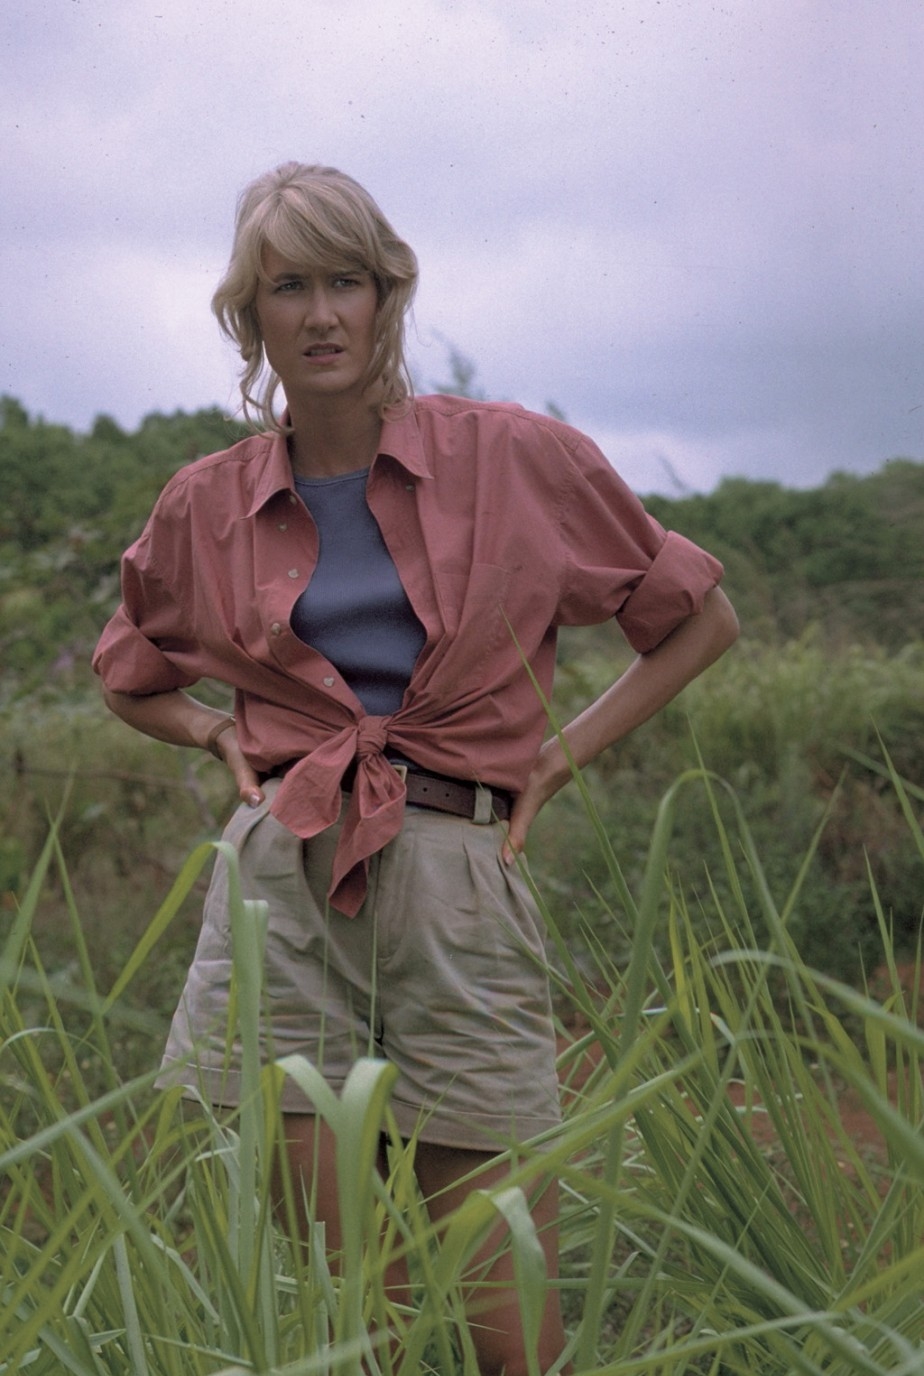 Ellie Sattler in Jurassic Park #movies #film #adventure